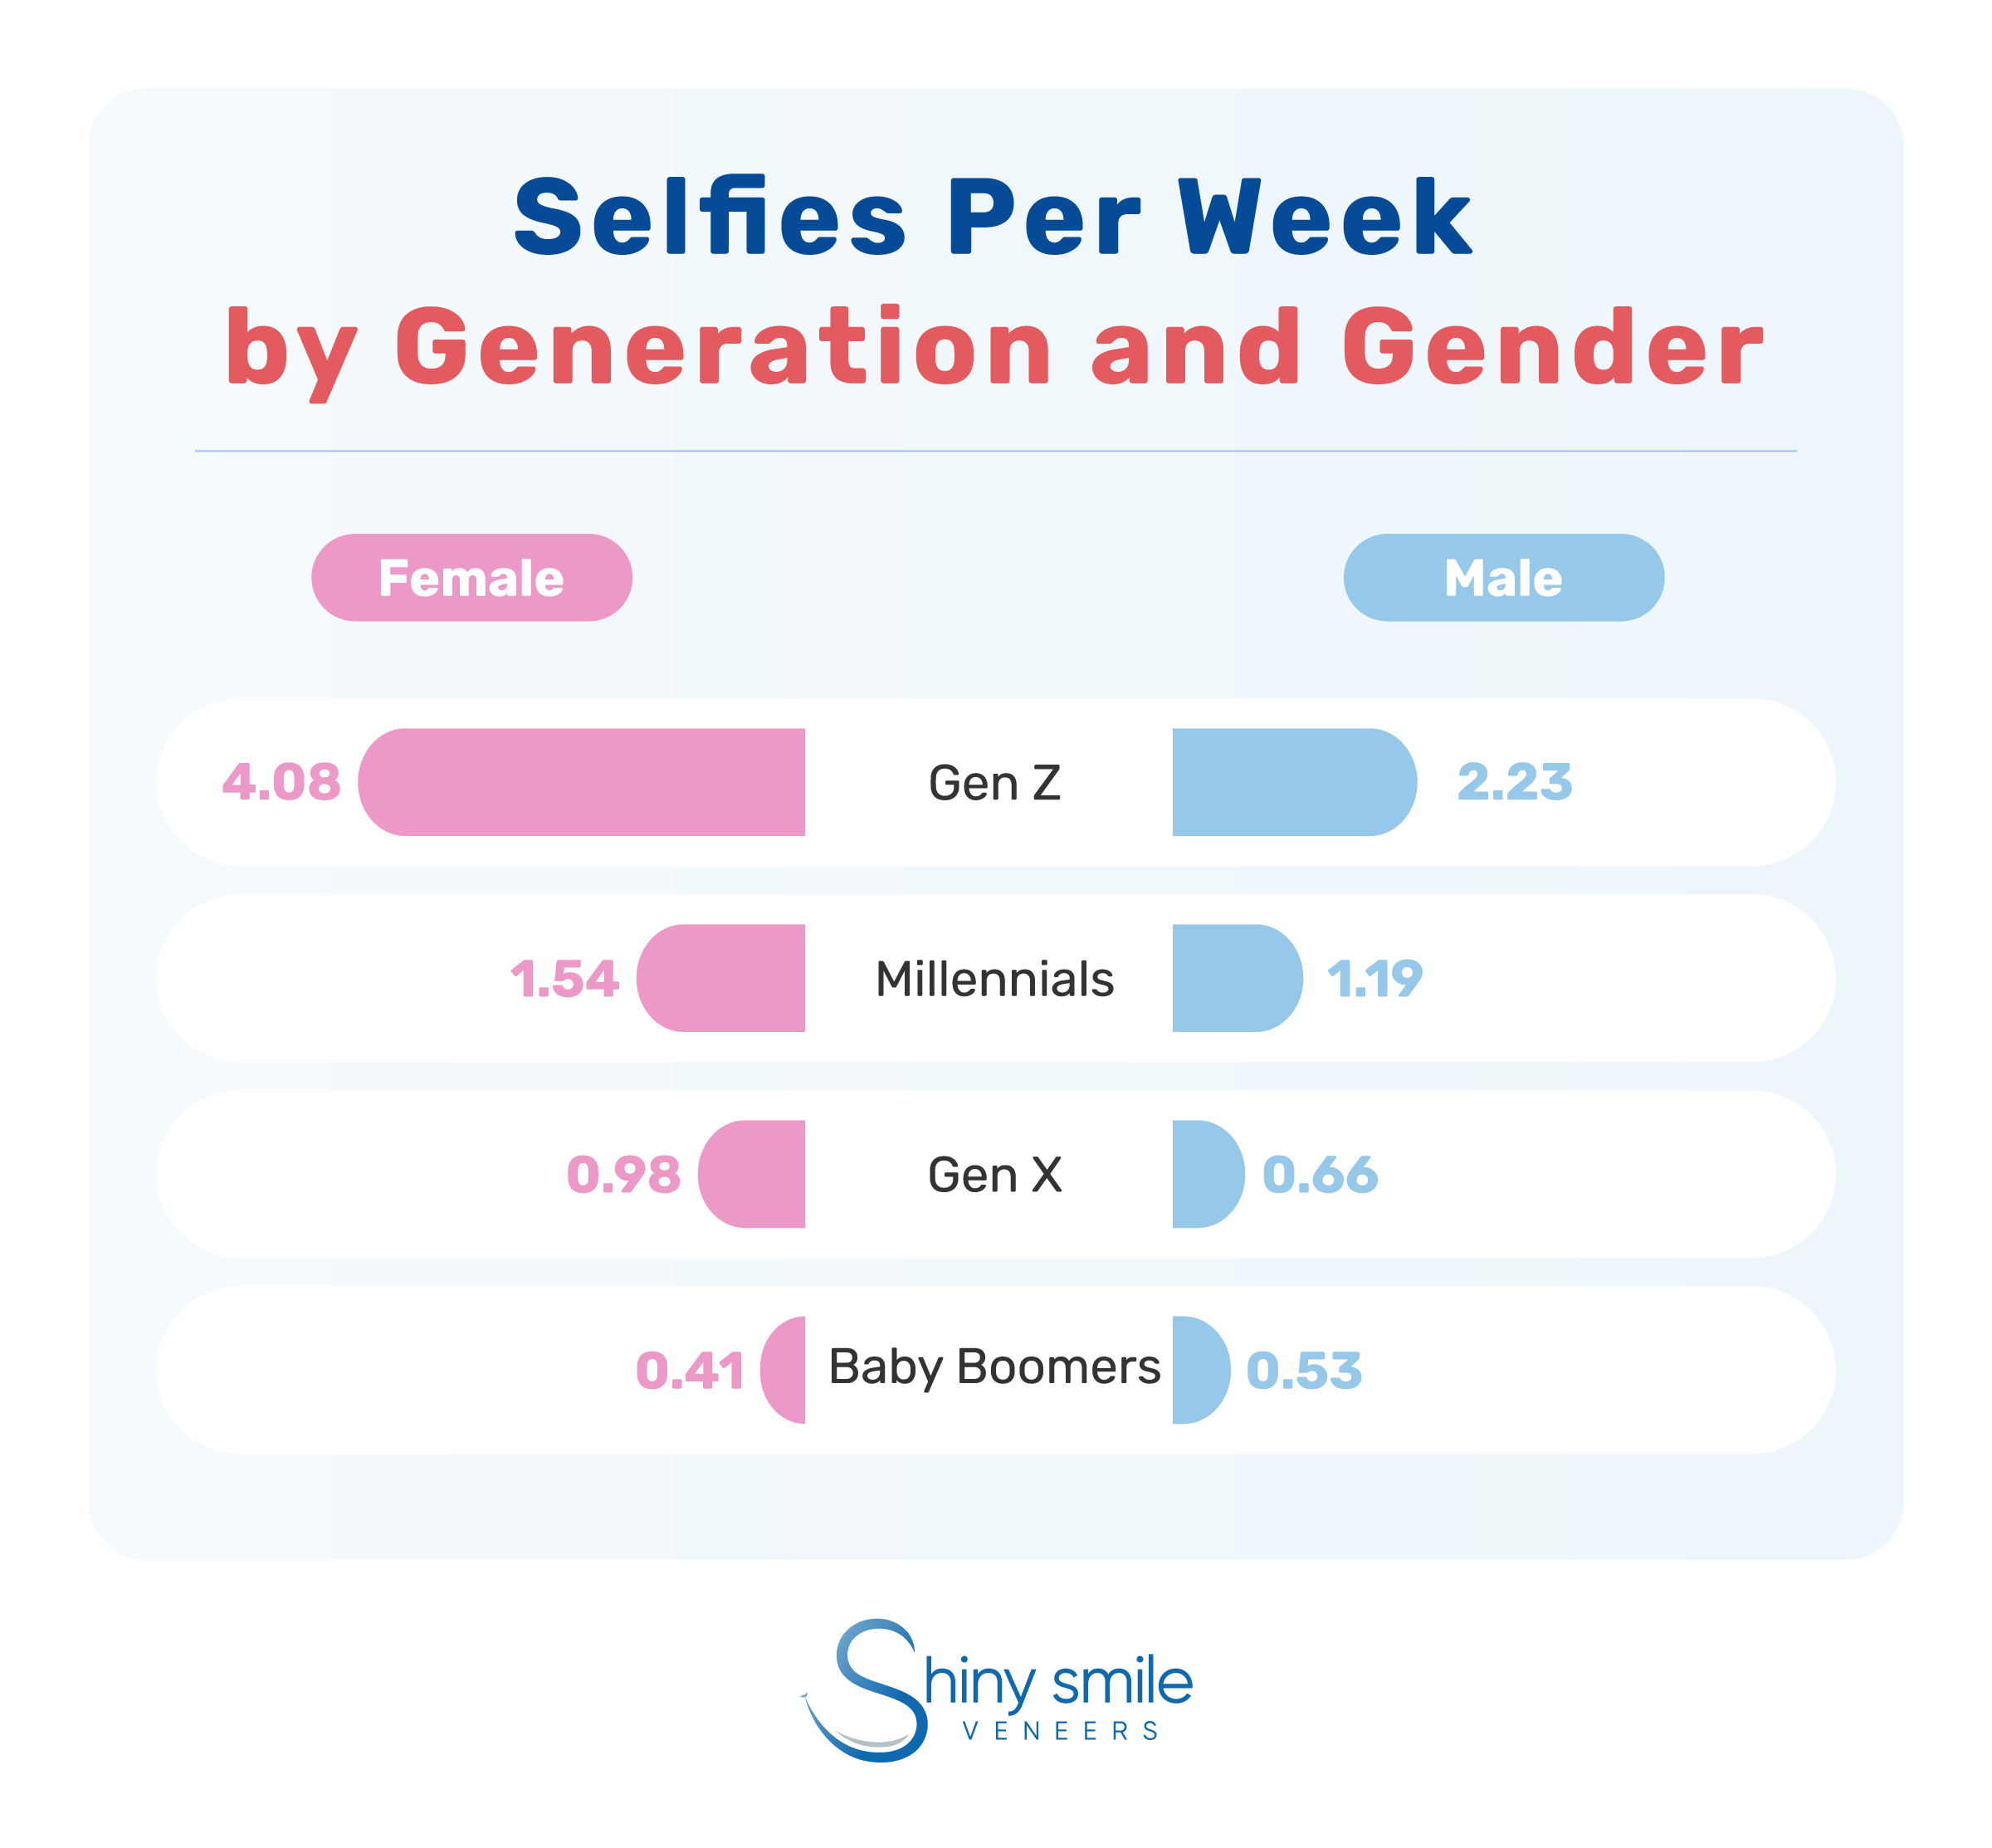 number of selfies per week each gender and generation take